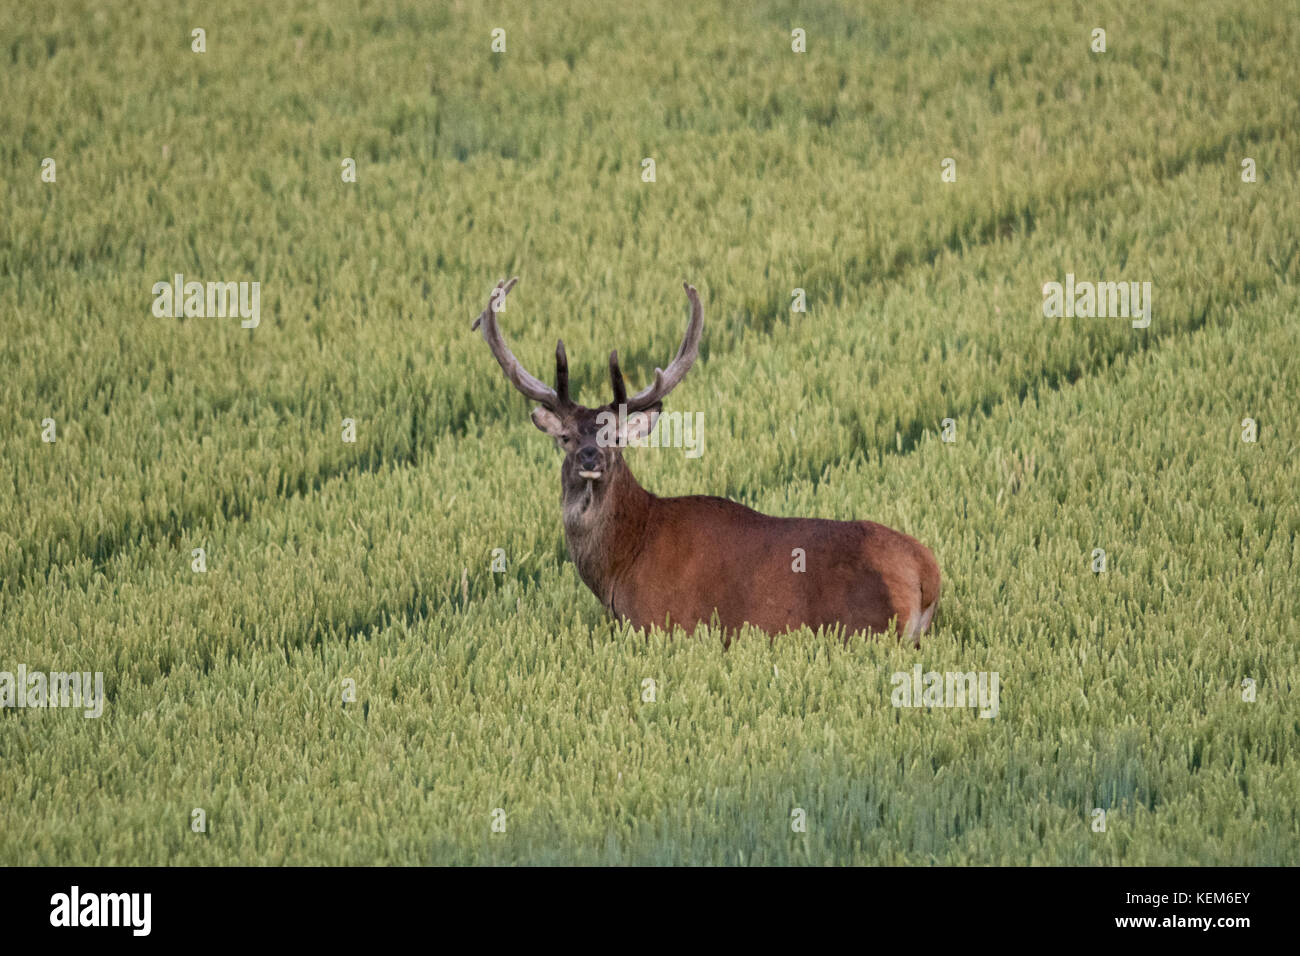 El ciervo robusto (Cervus elaphus) se alimenta en un campo de trigo para crecer grande y fuerte antes de la temporada de apareamiento en septiembre Foto de stock